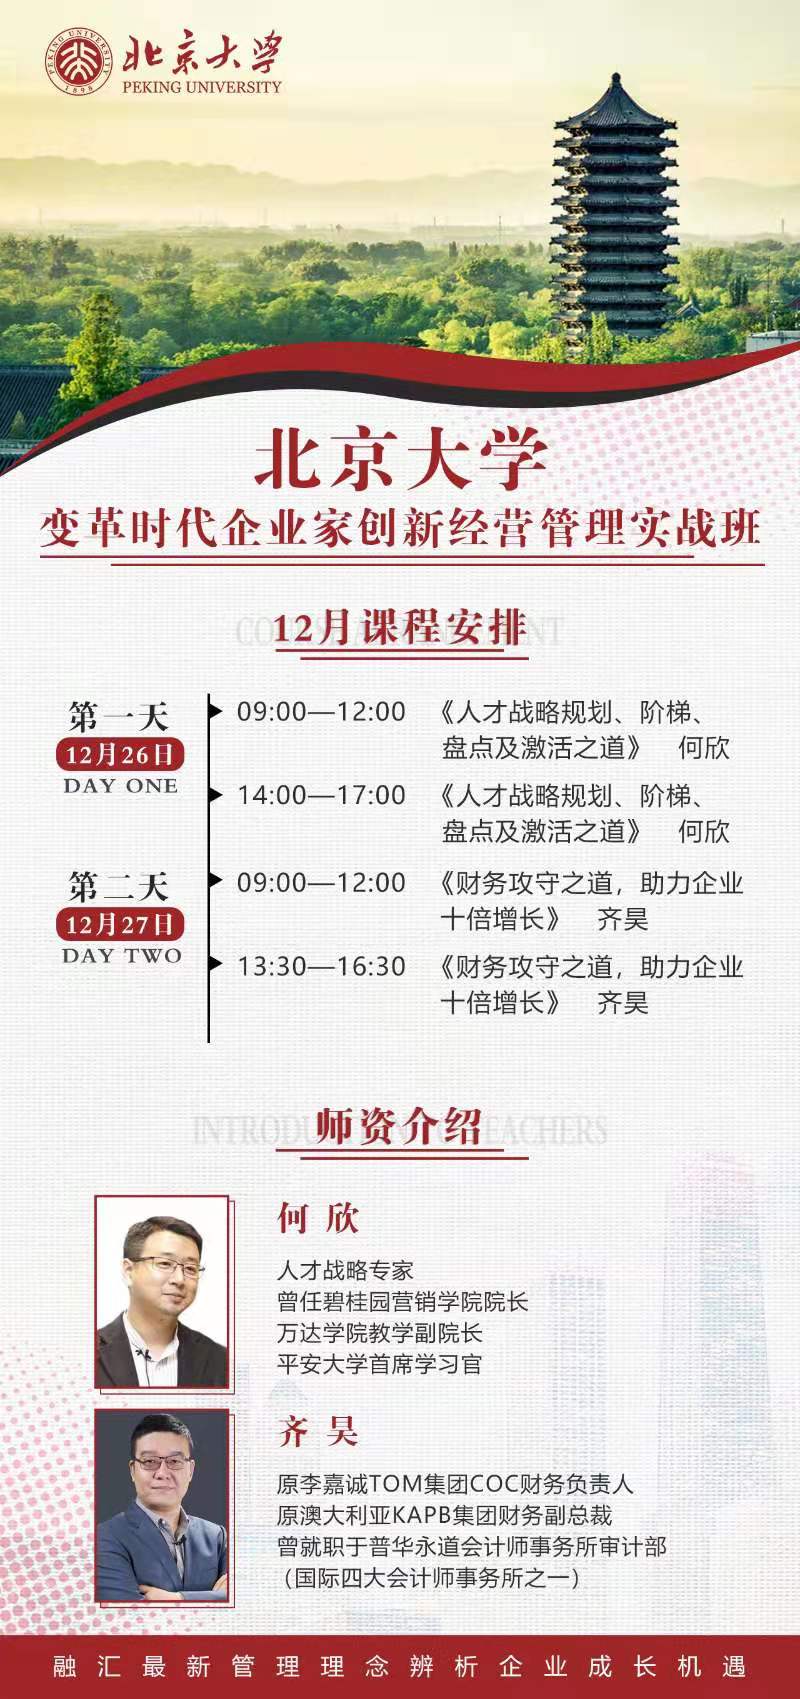 北京大学变革时代企业家创新经营管理实战班 2020年12月开课通知